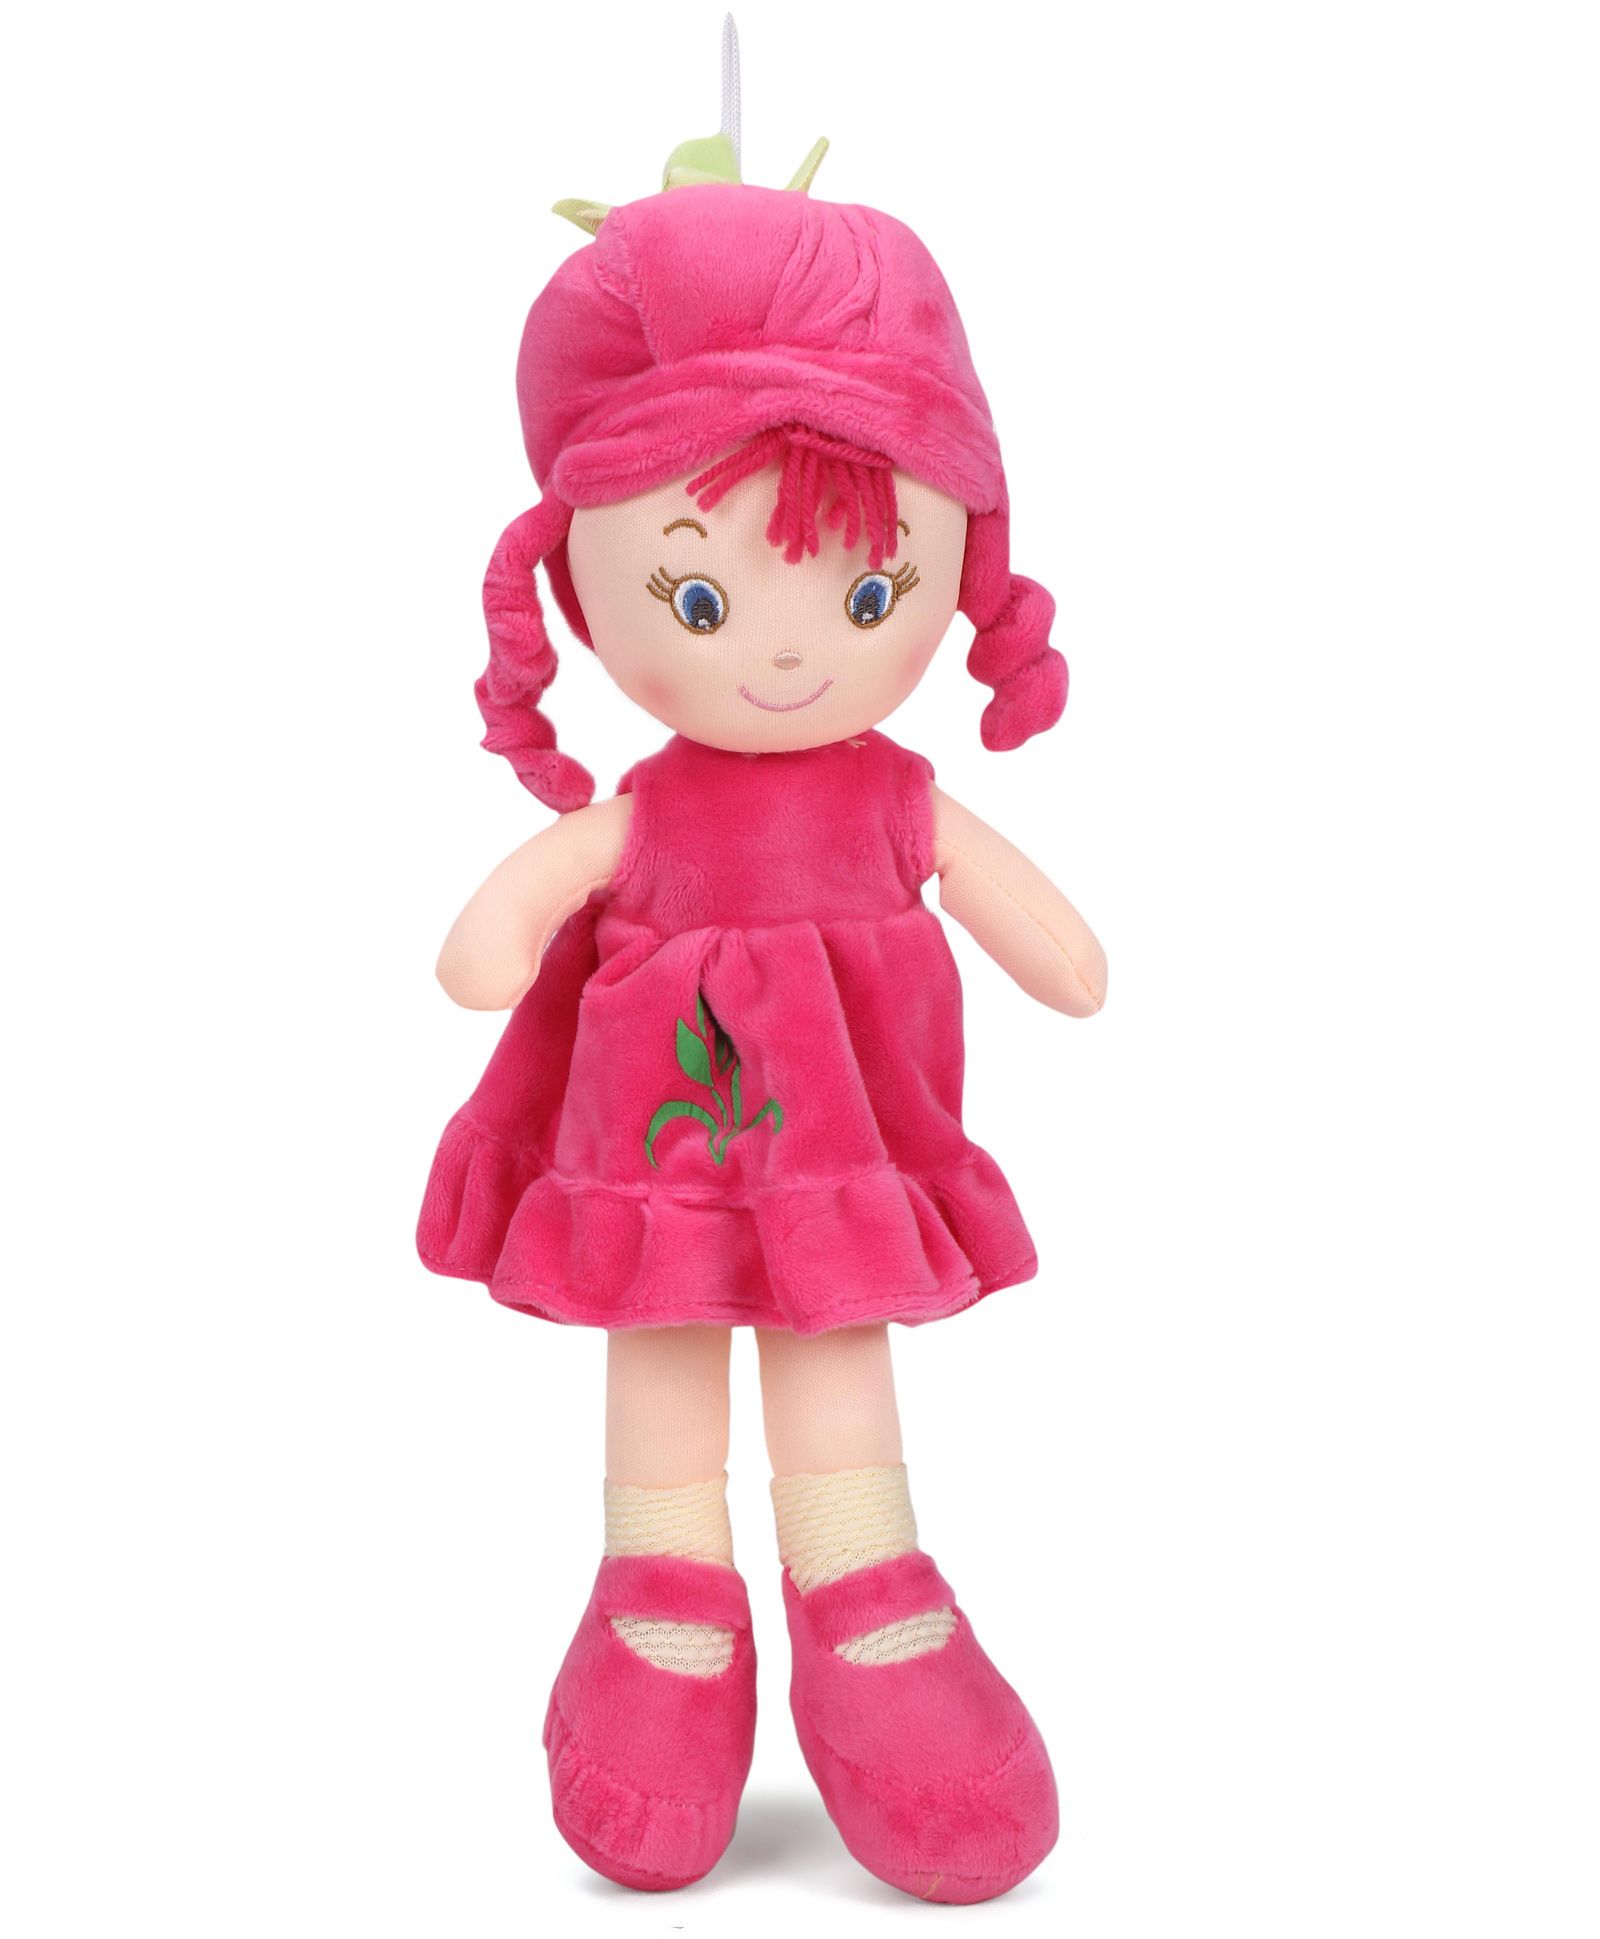 Starwalk Plush Doll Dark Pink - Height 35 cm